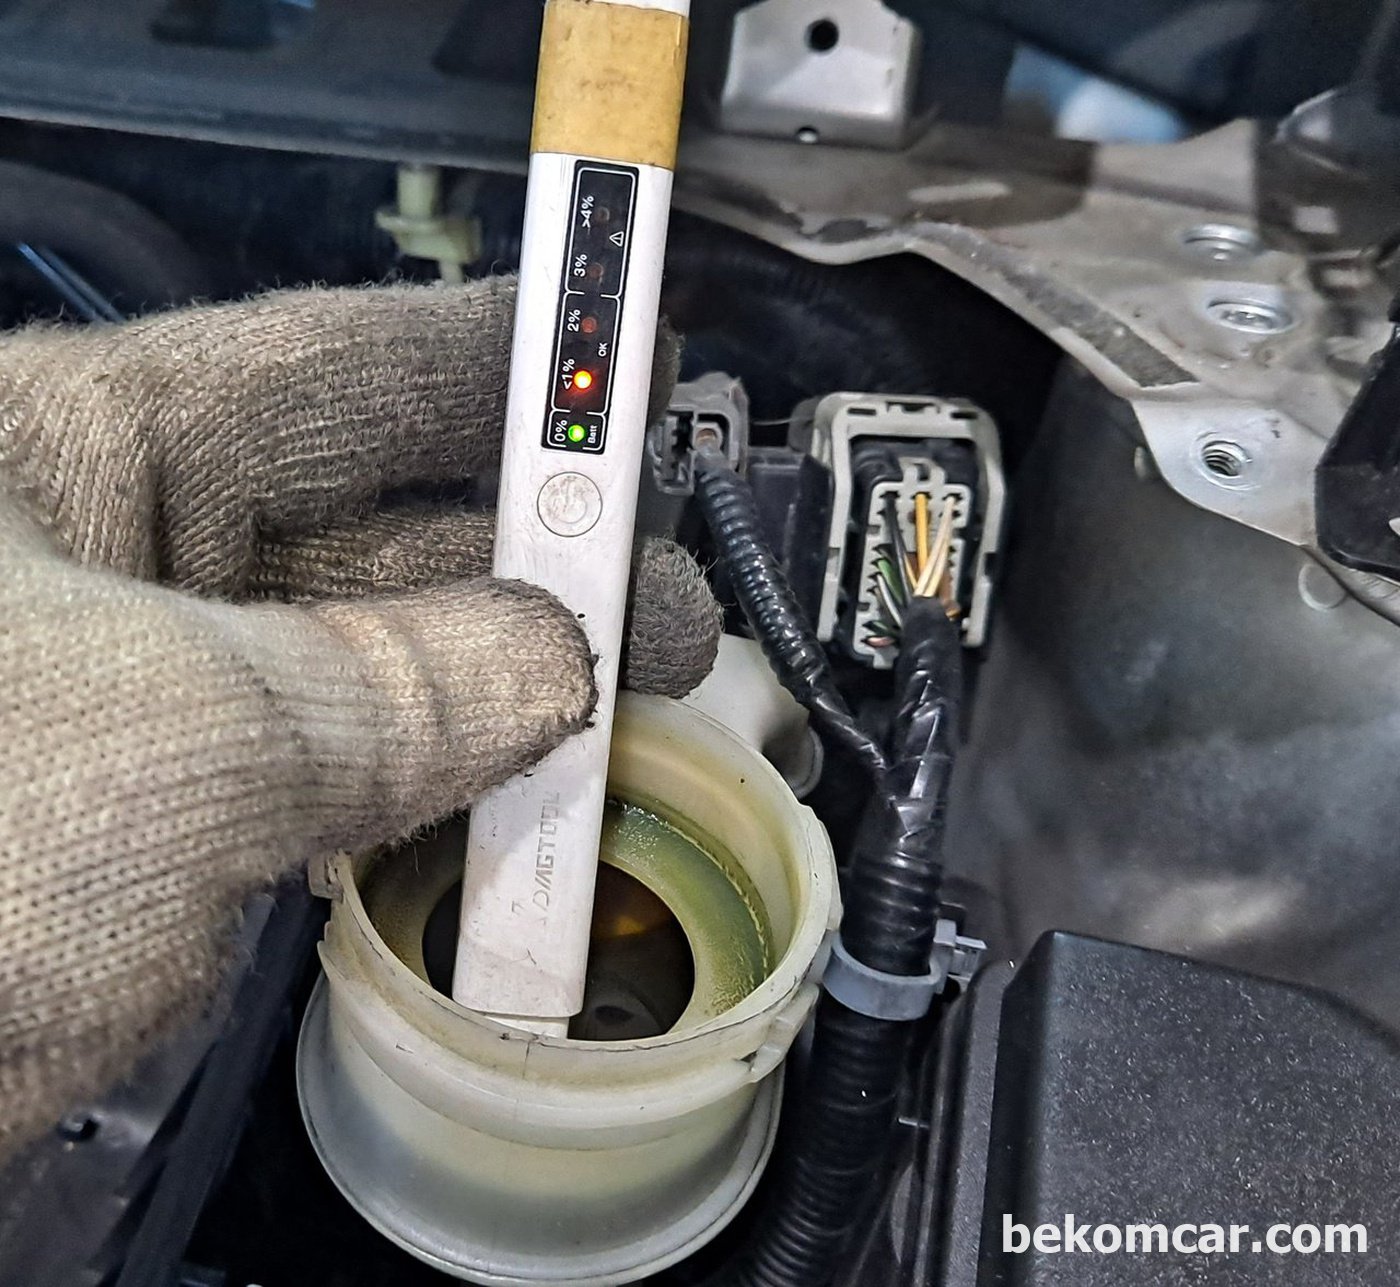 브레이크오일 수분함량 약 1%로 아직 정상범위이고 오염도 역시 없다. 1년후 재점검한다.|bekomcar.com